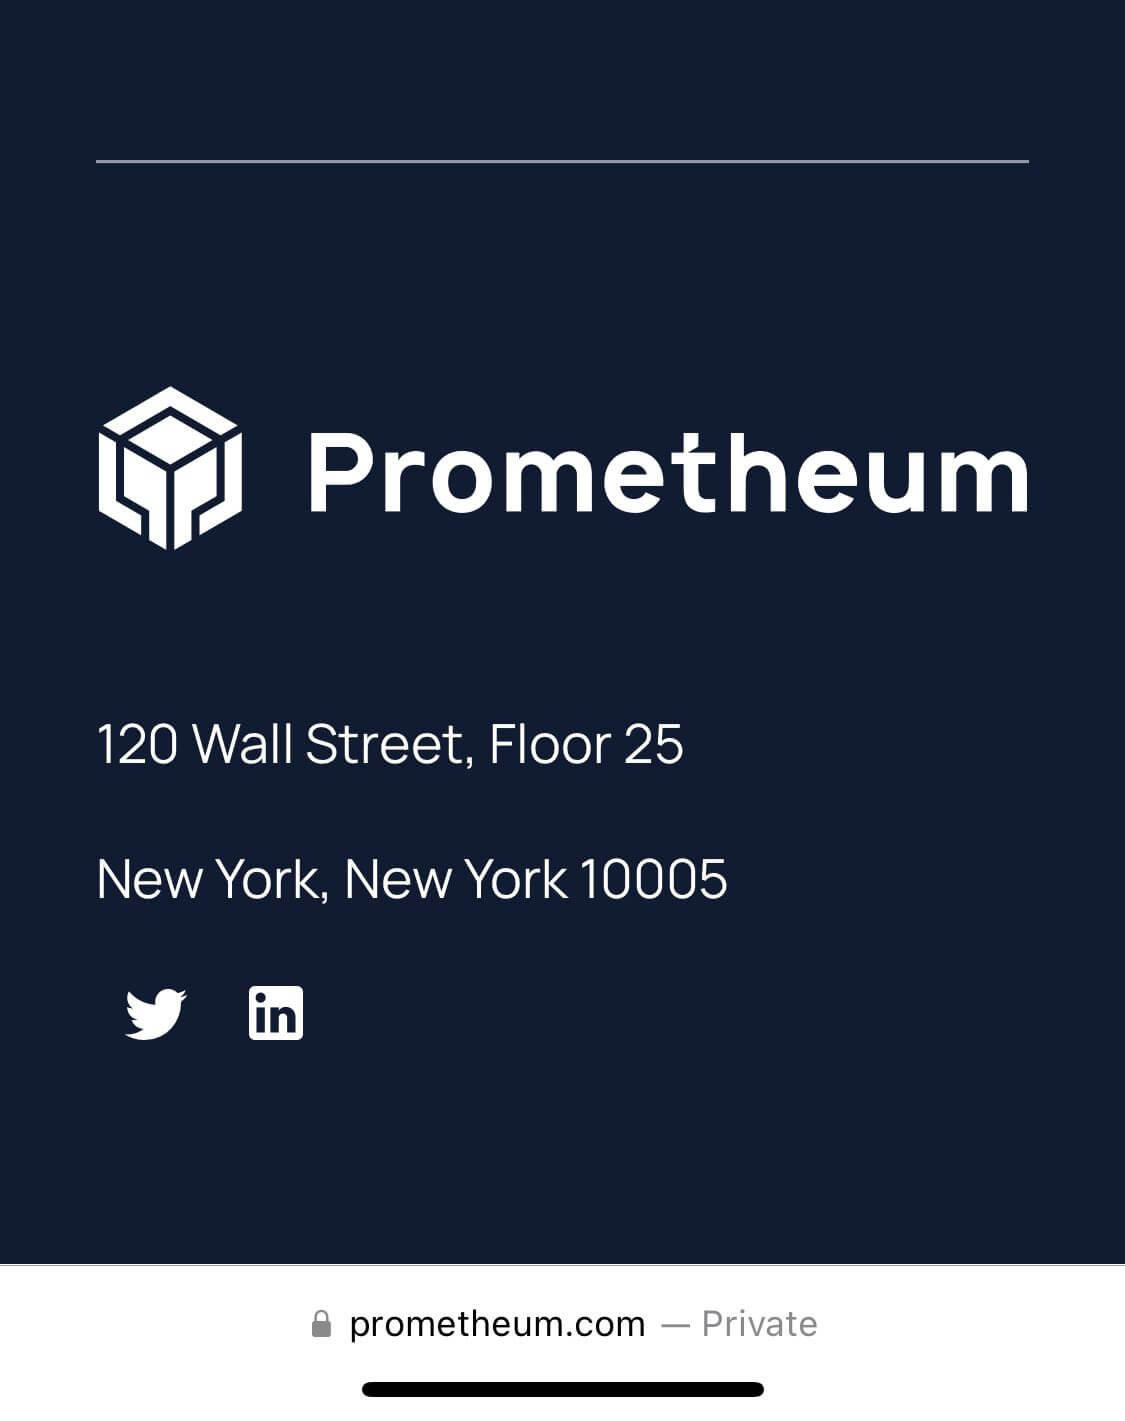 Что делает компания Prometheum. Официальный адрес Prometheum. Фото.